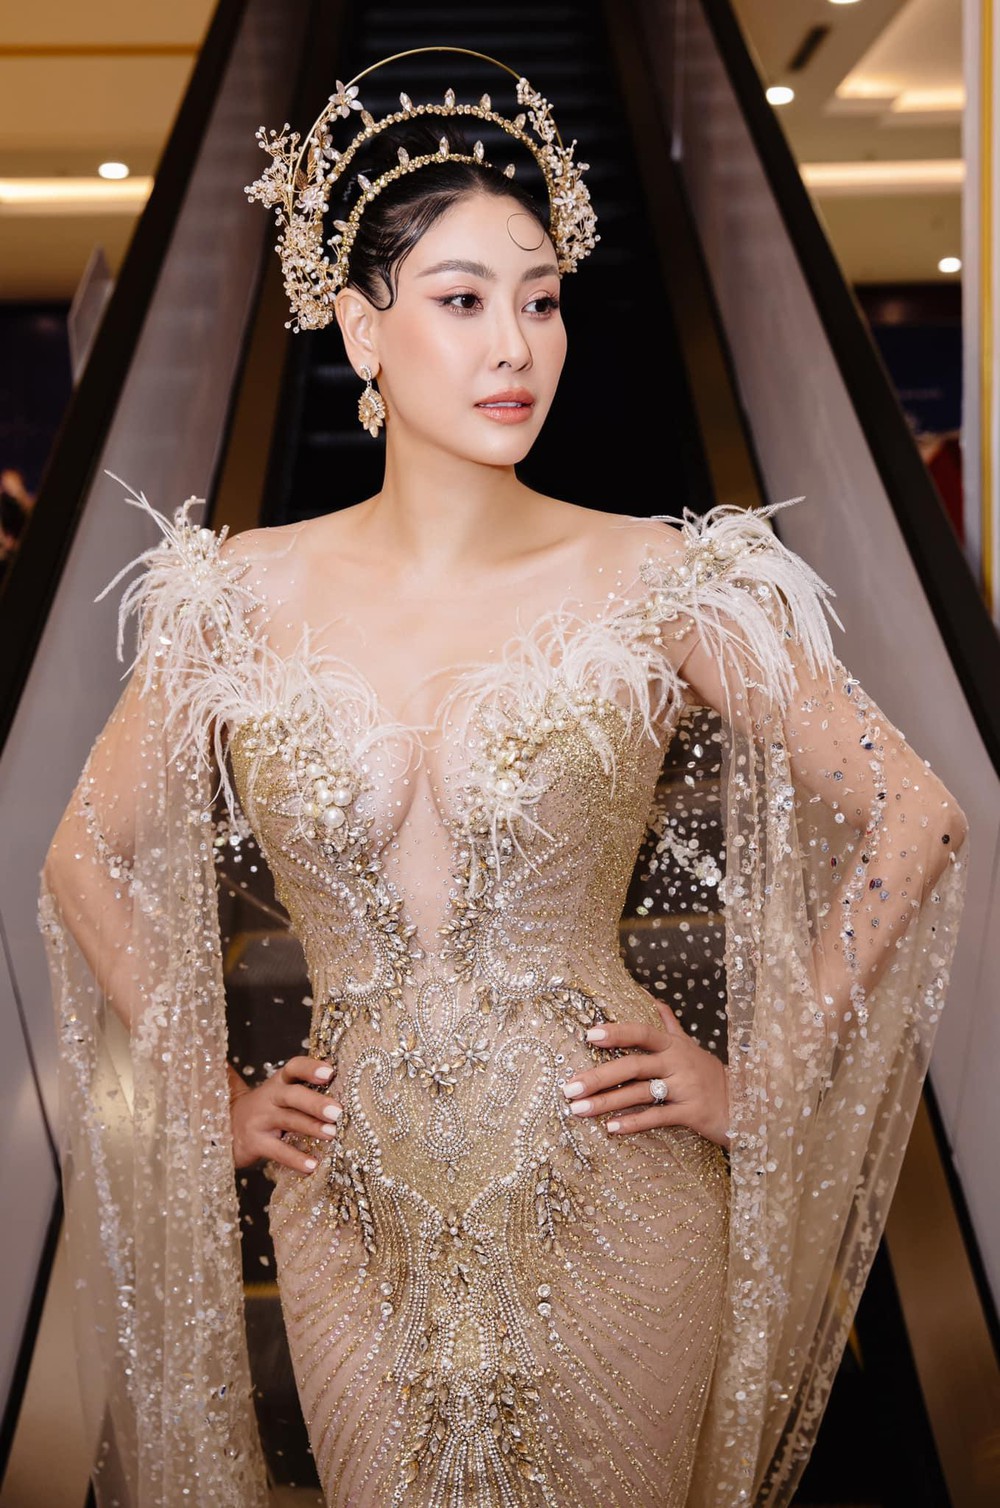 Hoa hậu Hà Kiều Anh ở tuổi 45: Từ nhan sắc đến vóc dáng đỉnh cao khiến đàn em ngưỡng mộ - Ảnh 10.